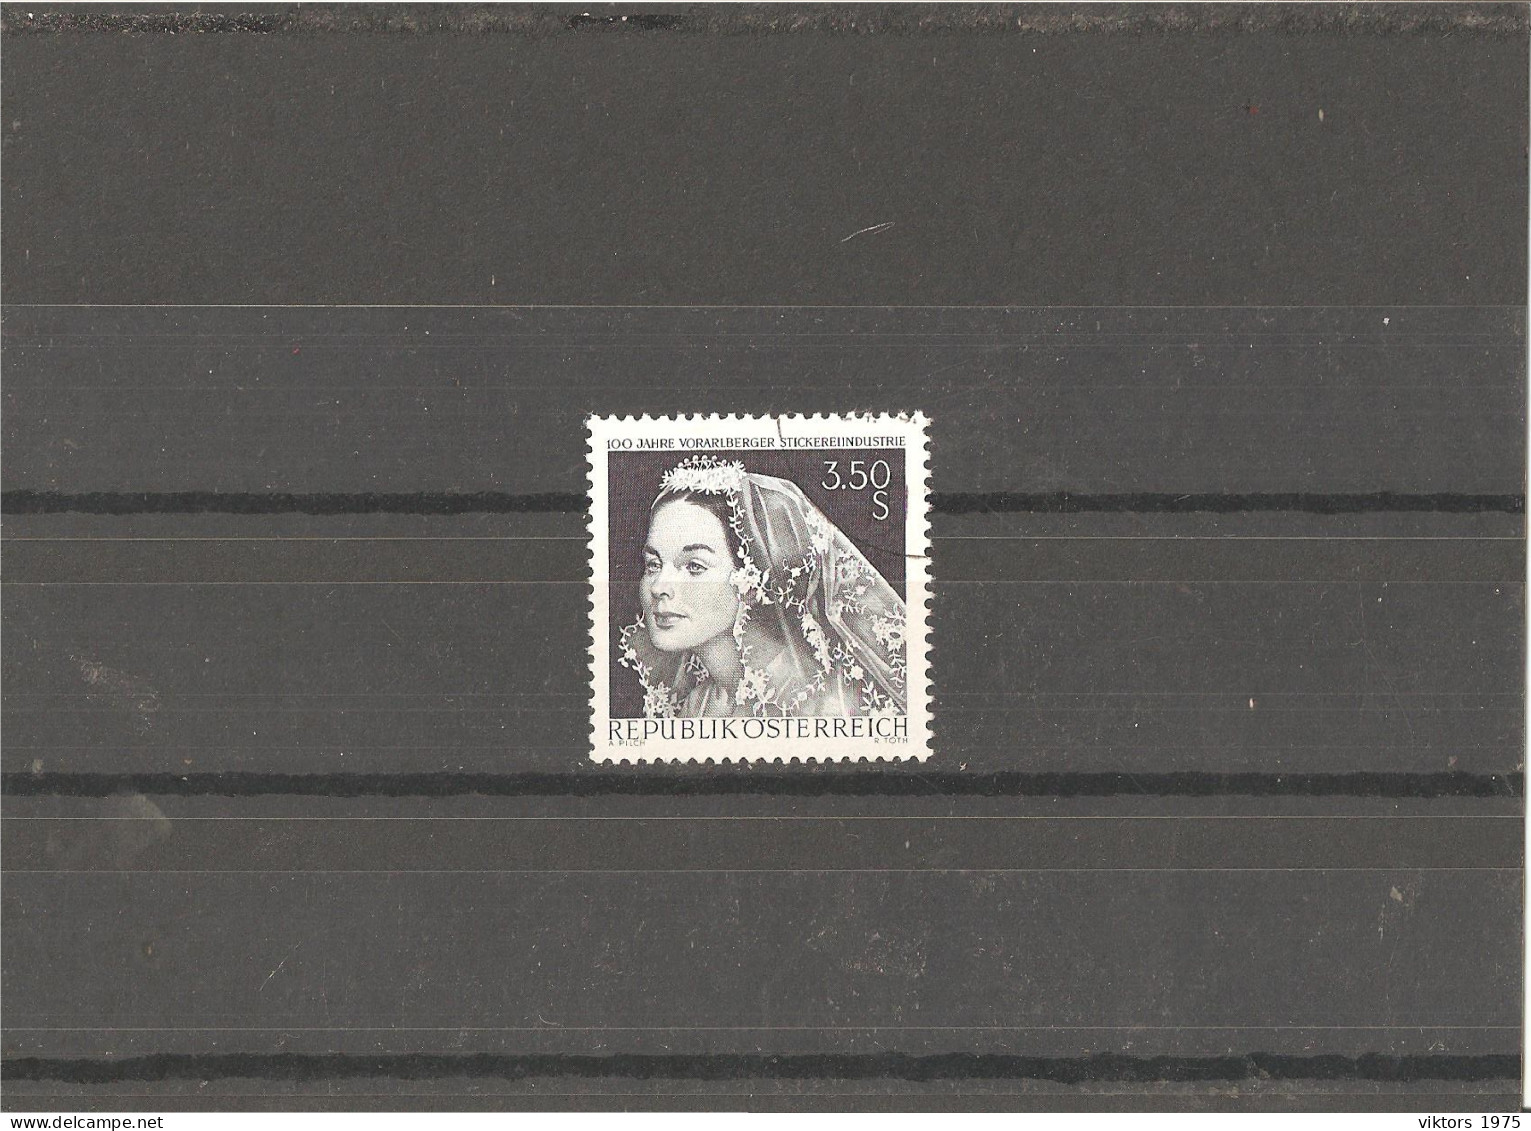 Used Stamp Nr.1261 In MICHEL Catalog - Usati